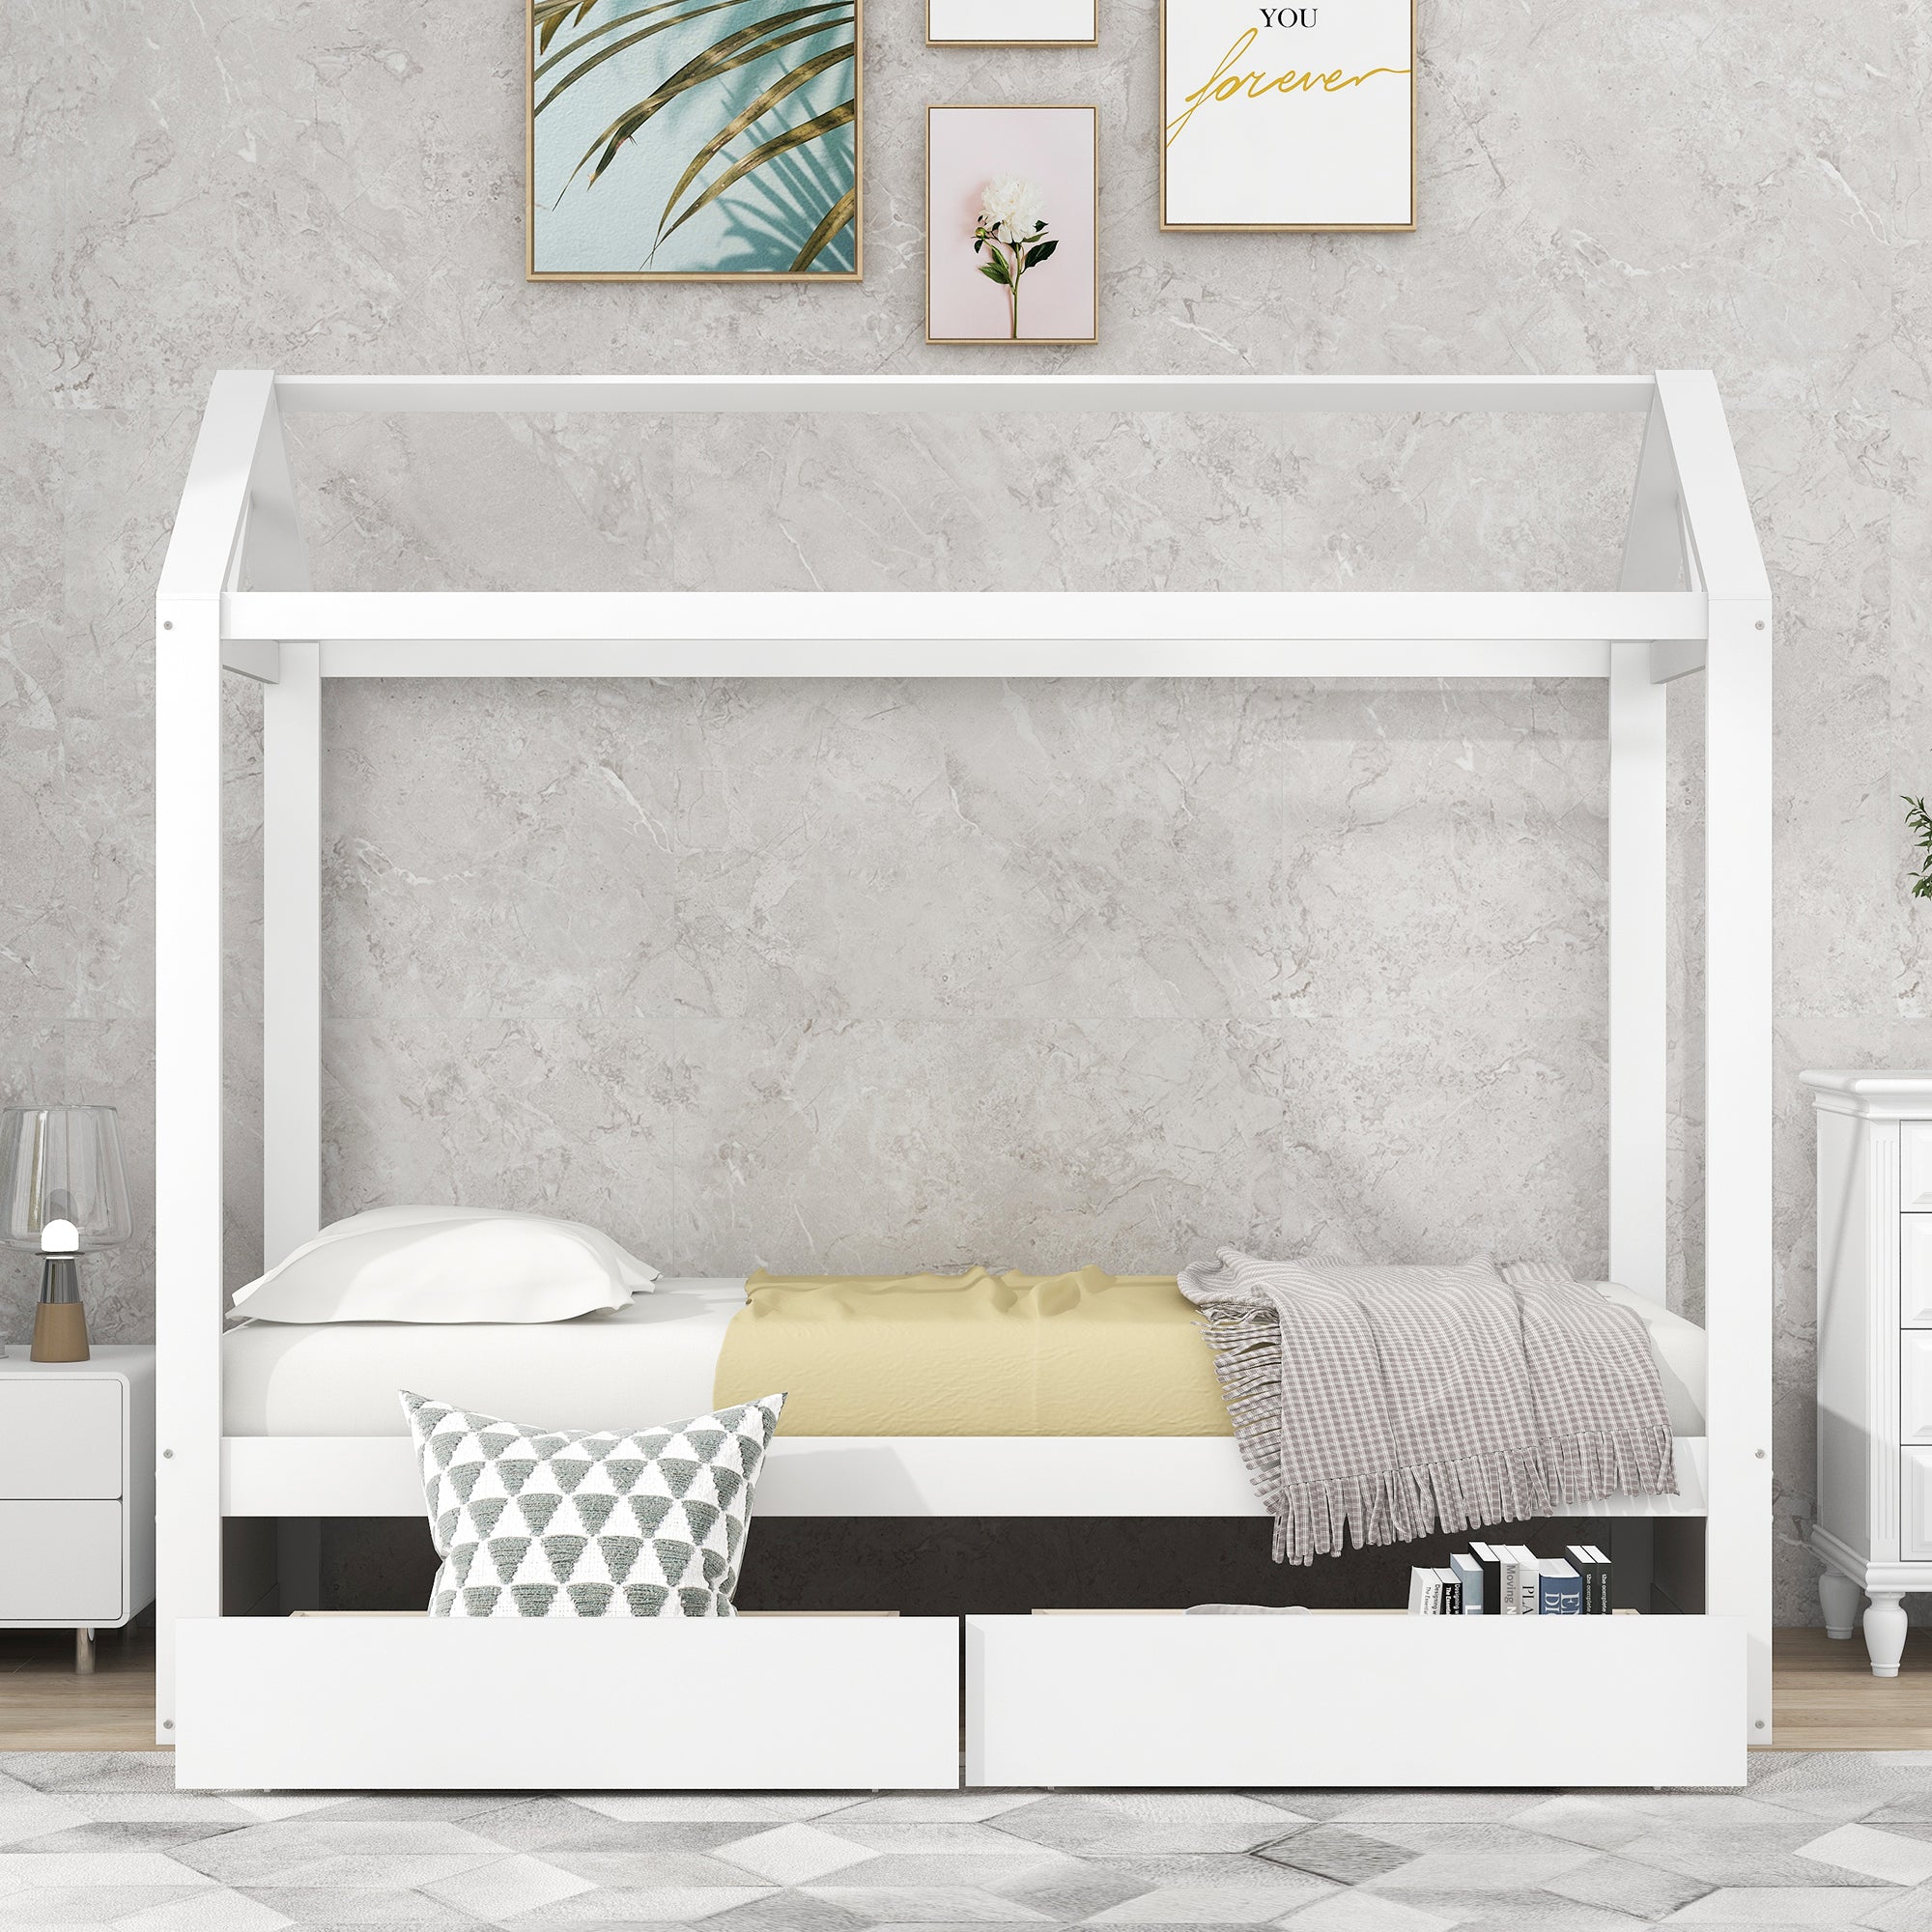 Single Size House Platform Bed mit Trundle, kann dekoriert werden (Weiß)